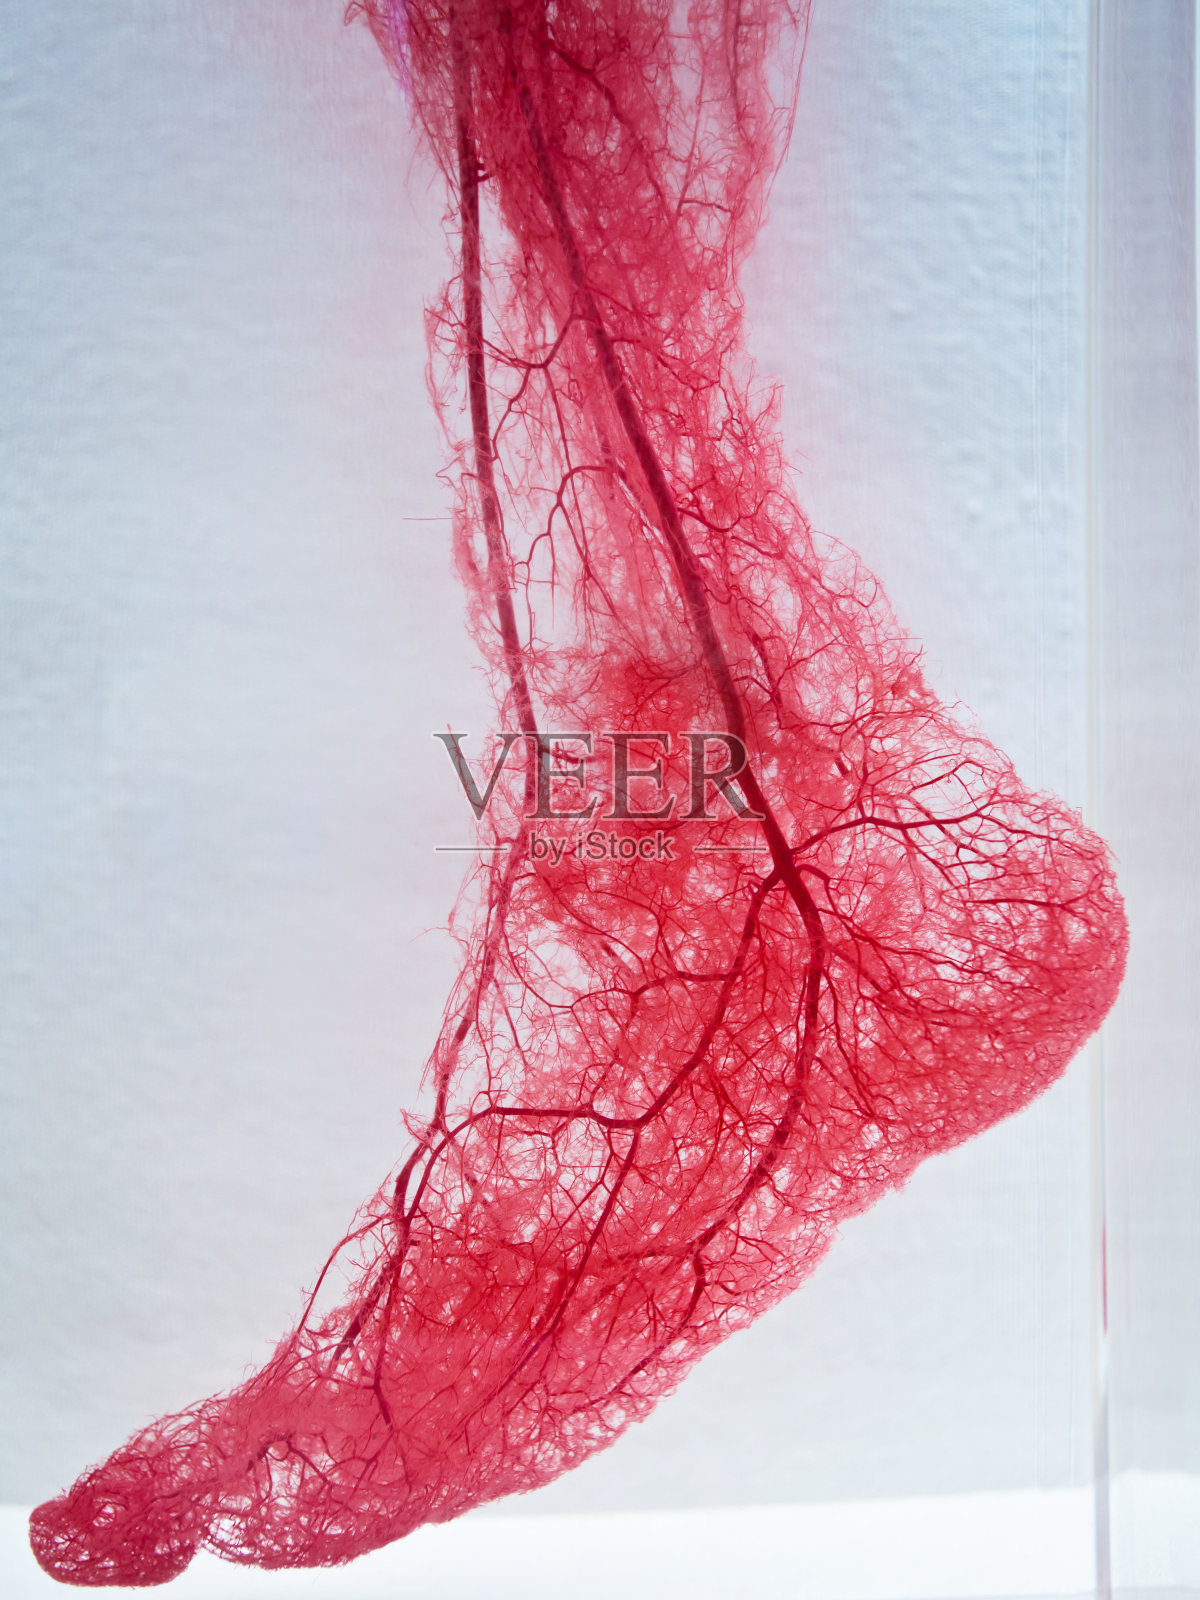 足部血管照片摄影图片